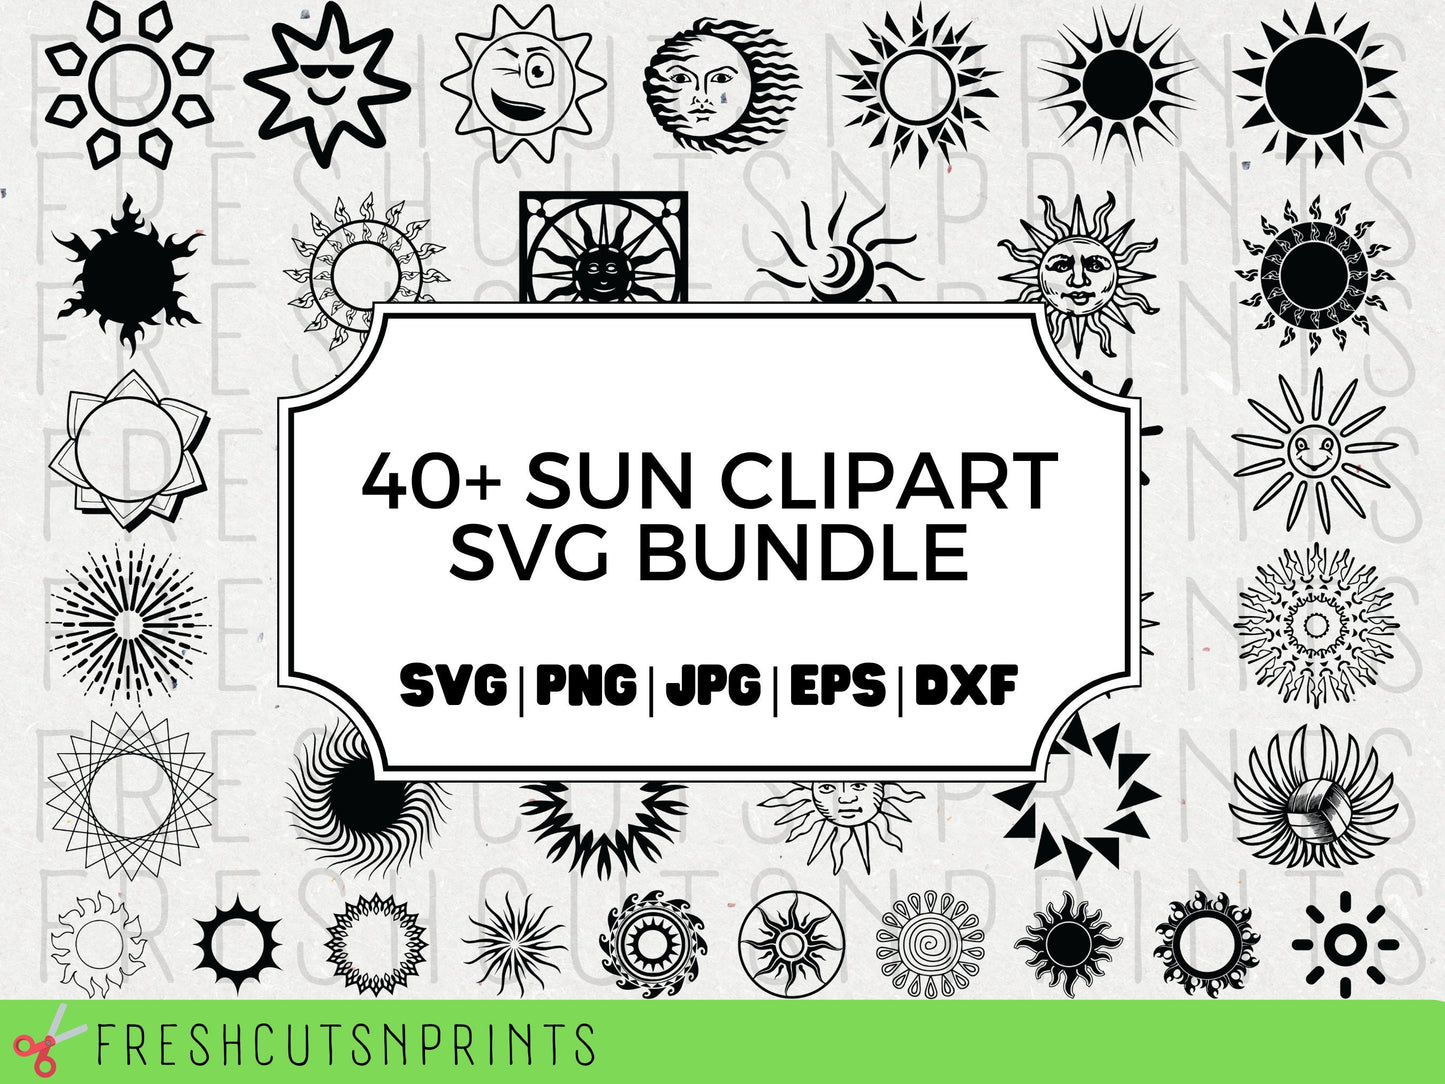 40+ Sun SVG Bundle , Sun clipart, Sun vector, Sun silhouette, Sun cut file, Sun files cricut, tribal sun svg, sun outline, commercial use